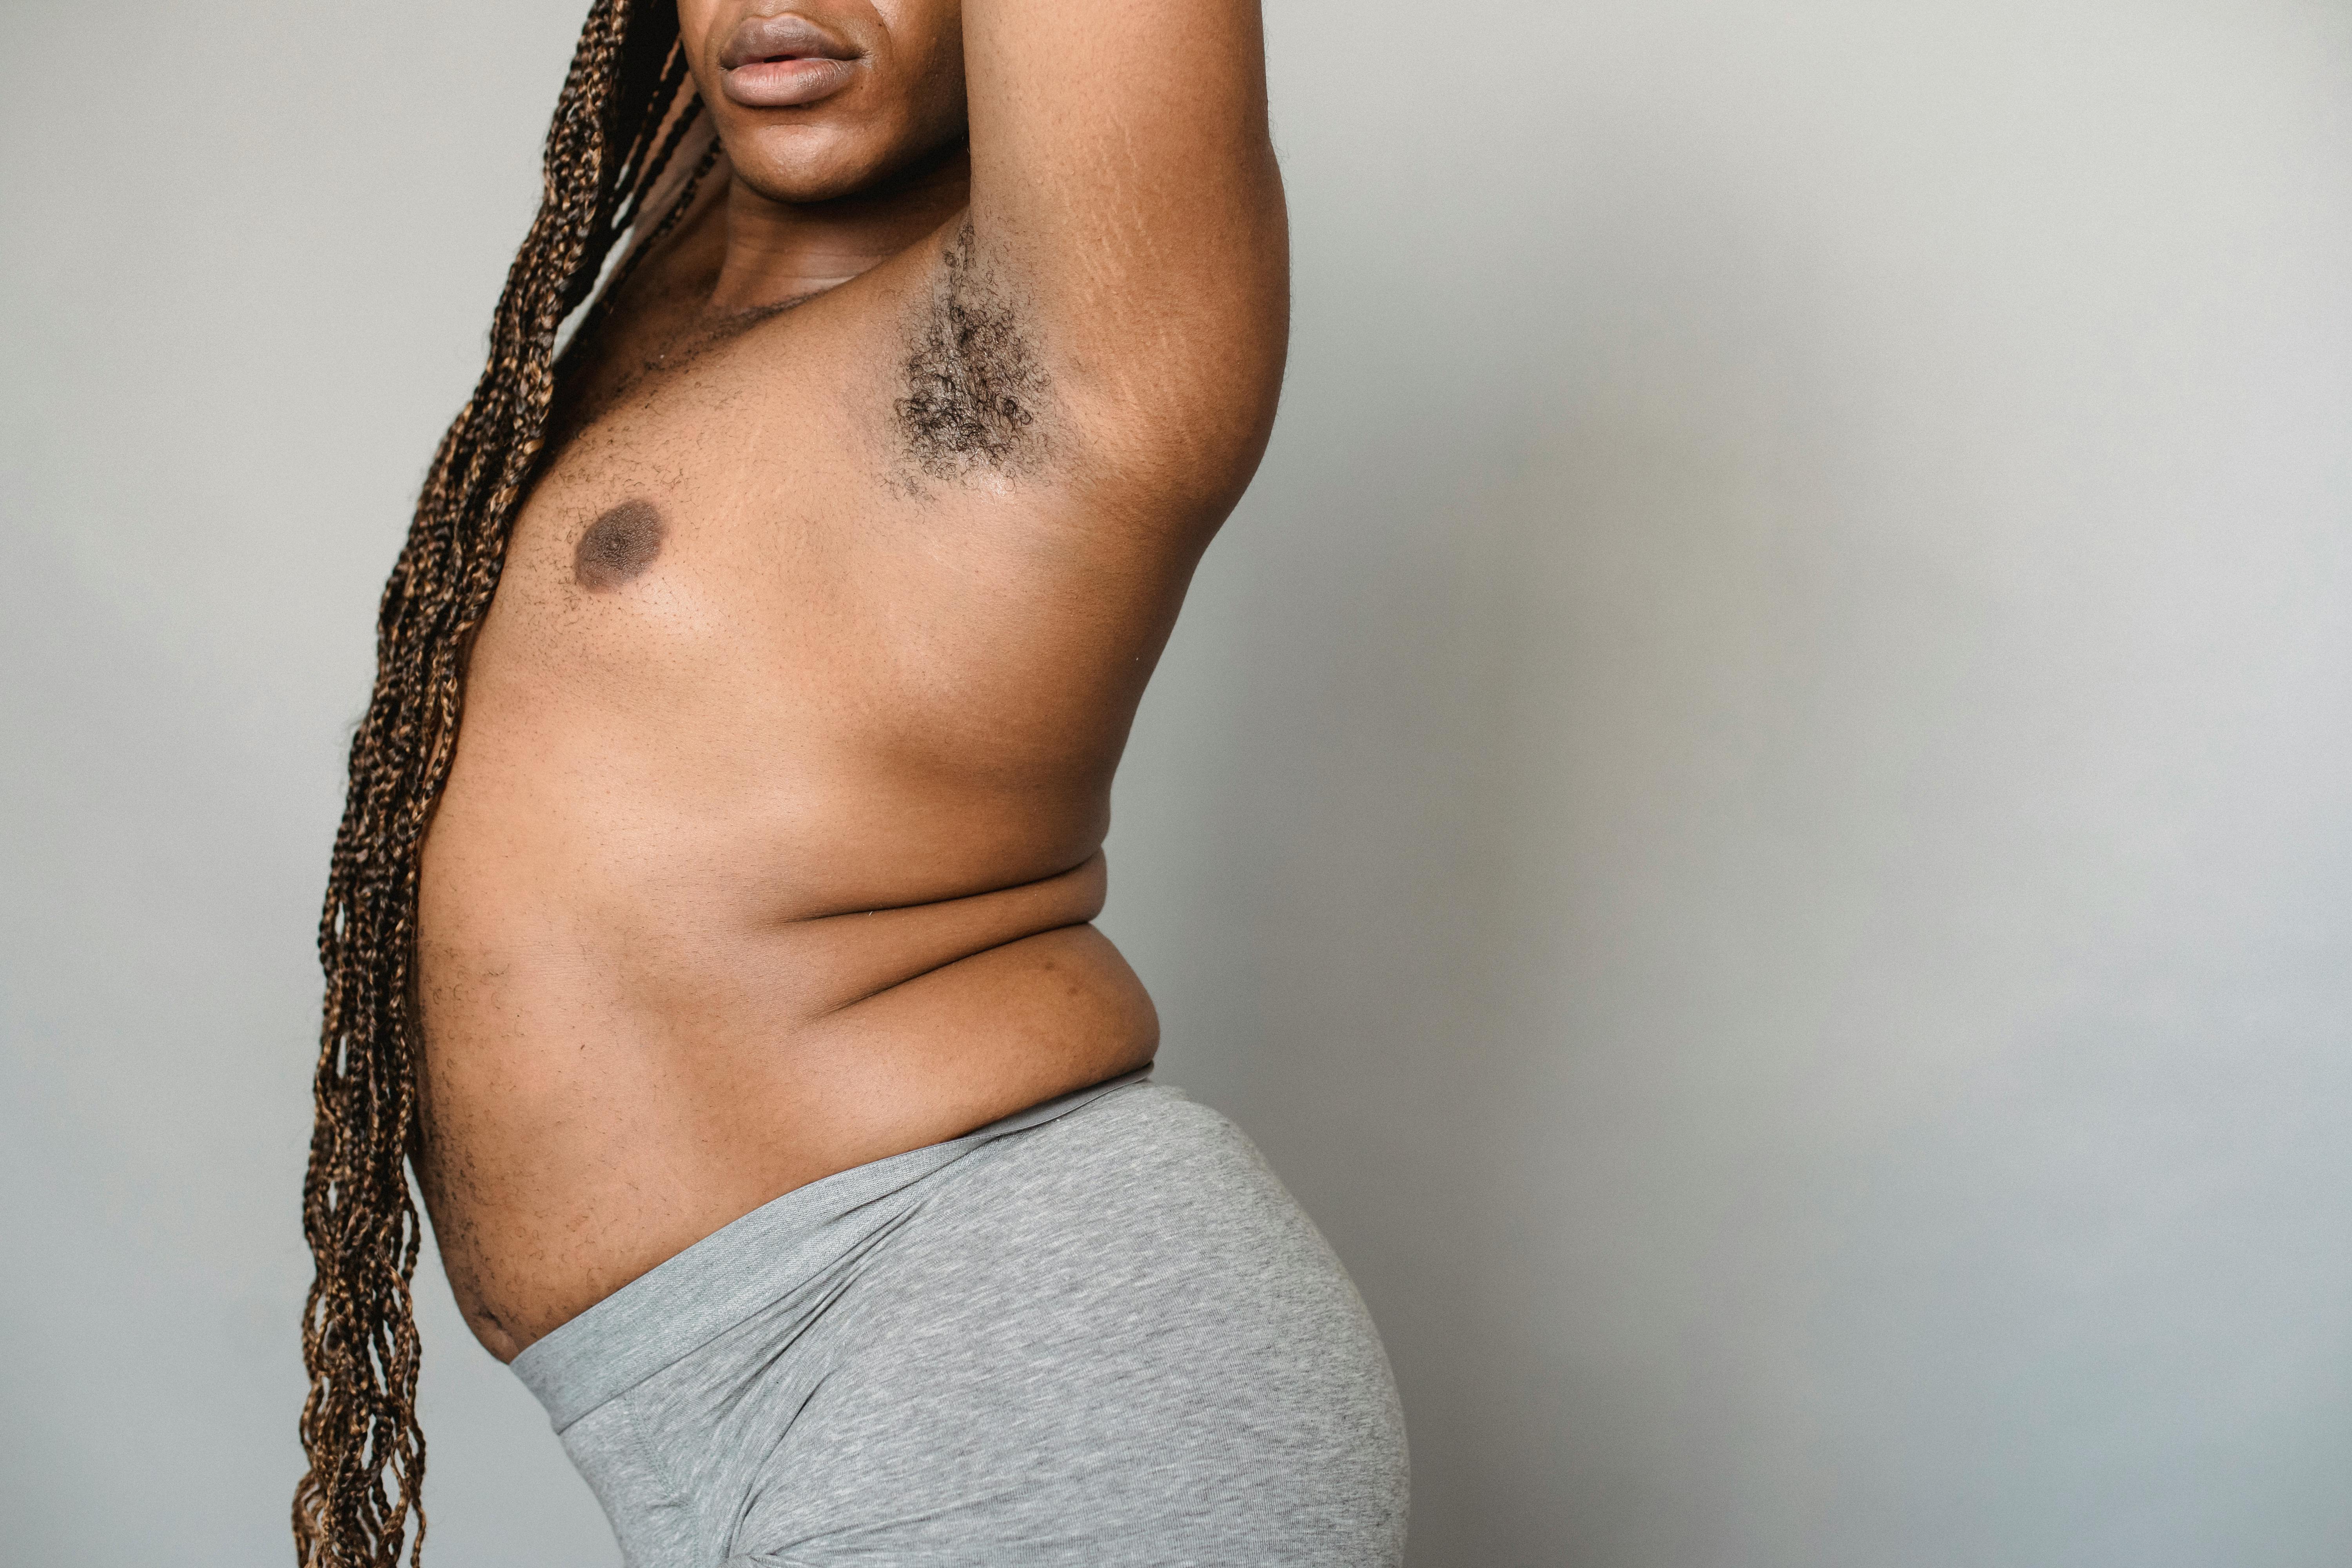 Crop overweight black transgender man in underwear in studio · Free Stock Photo photo